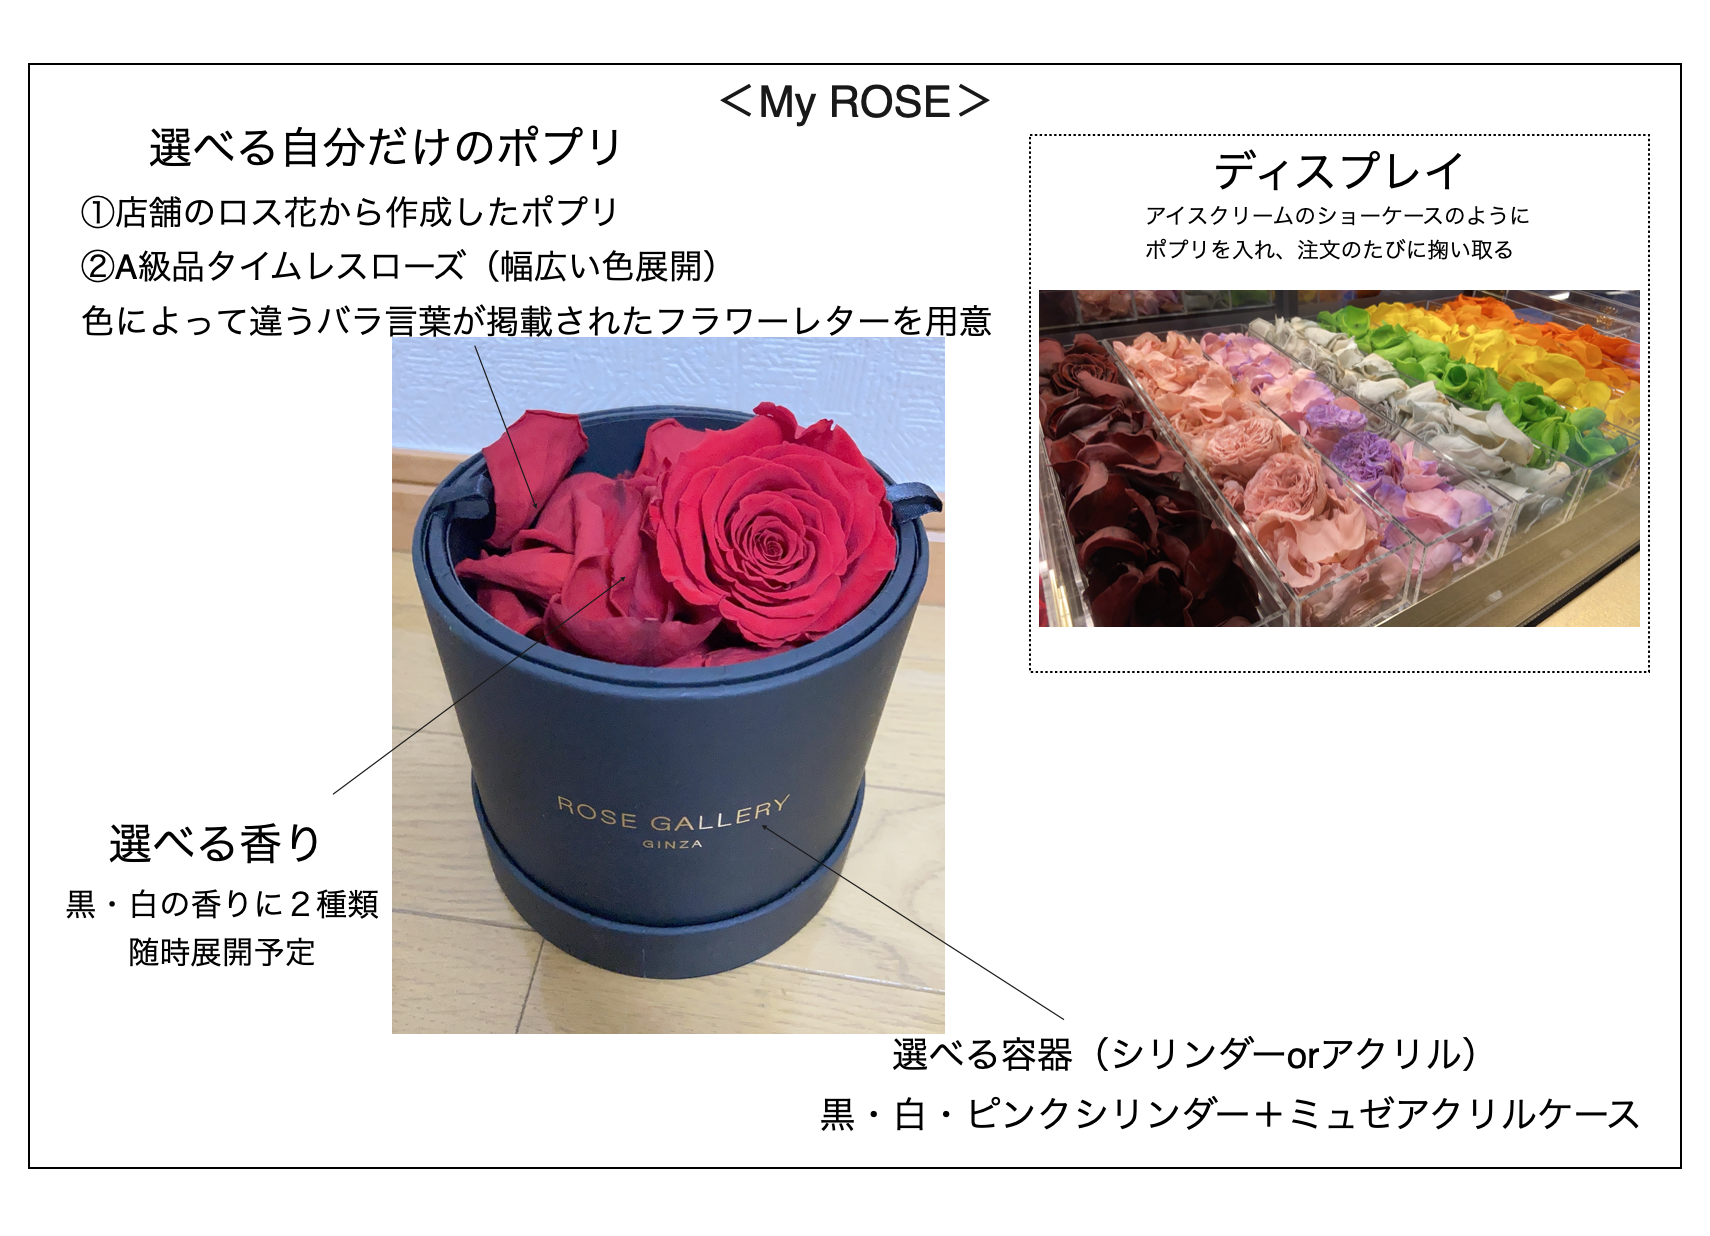 廃棄されてしまうバラを再活用 目の前でバラが生まれ変わる新コンセプトショップ Re Rose が6月24日オープン Newscast